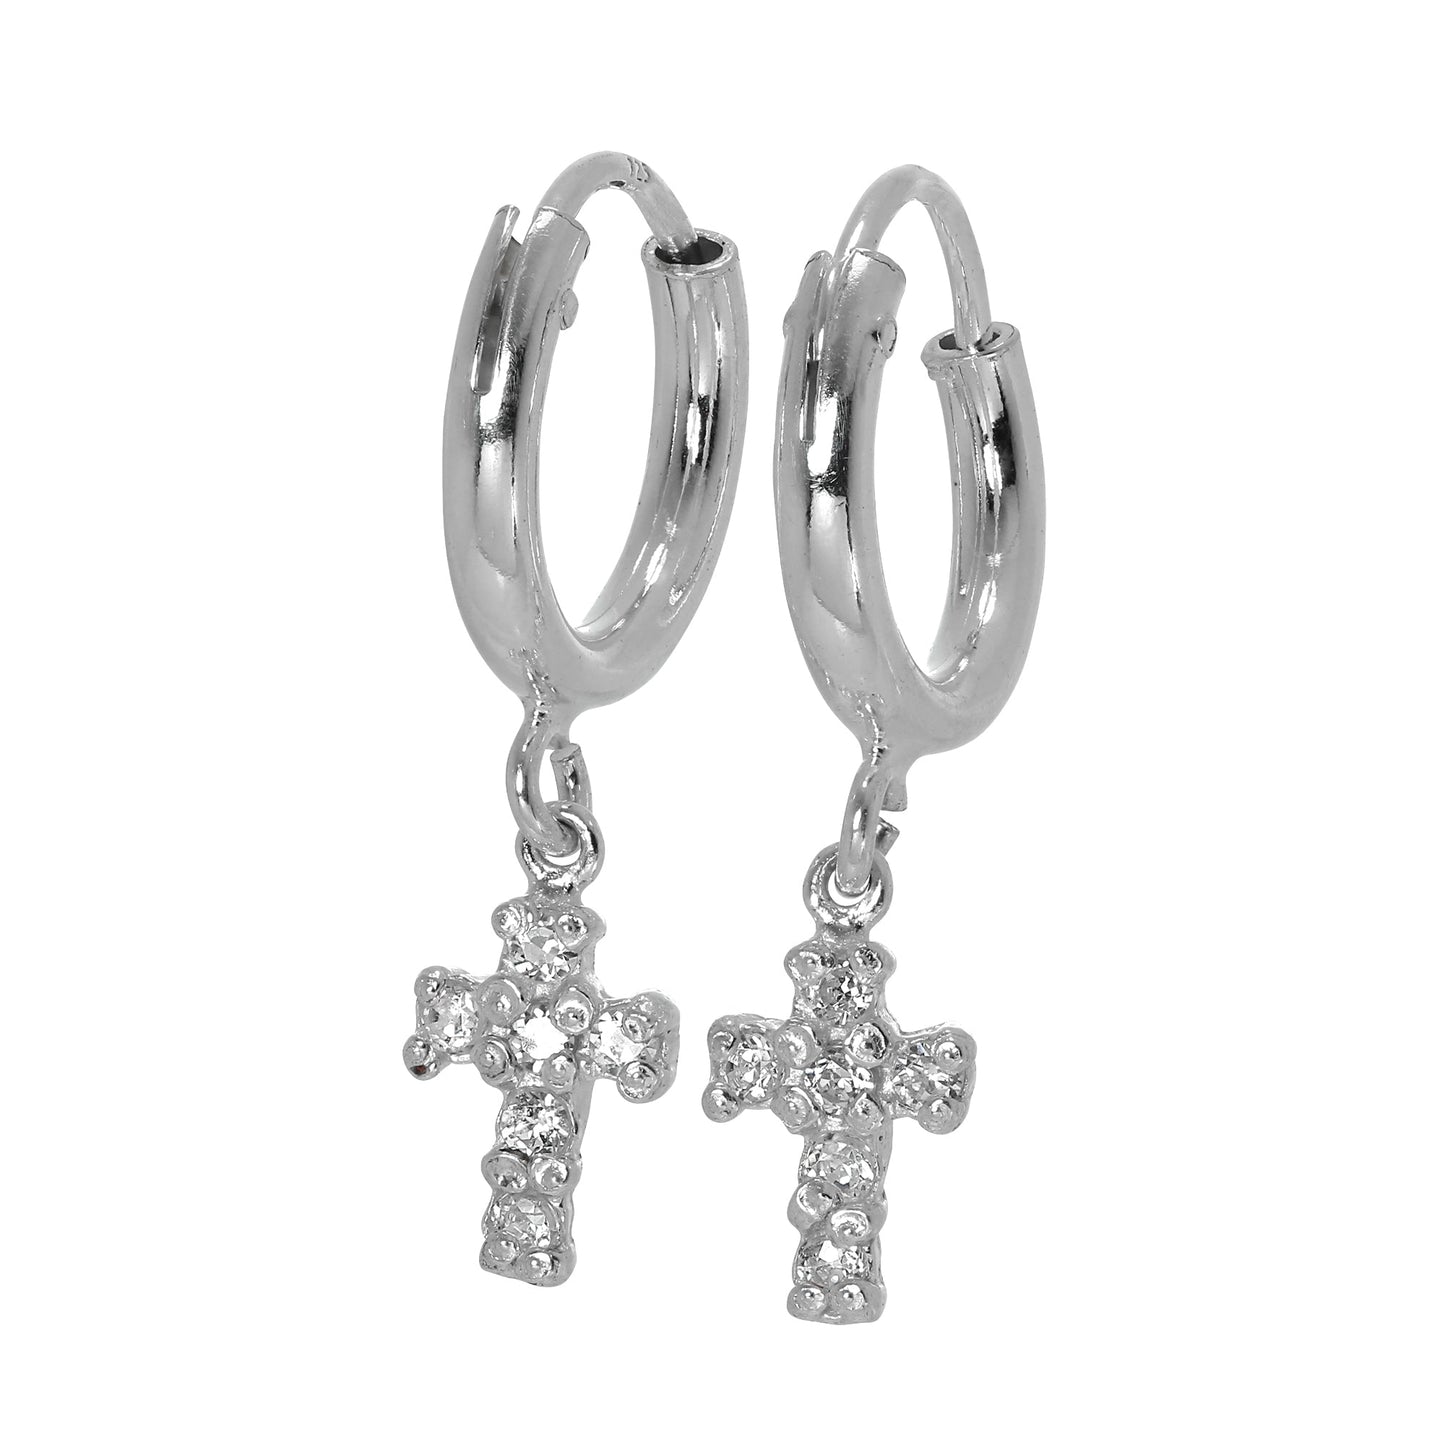 Sterling Silver Sleeper Hoop Earrings with CZ Crystal Encrusted Cross